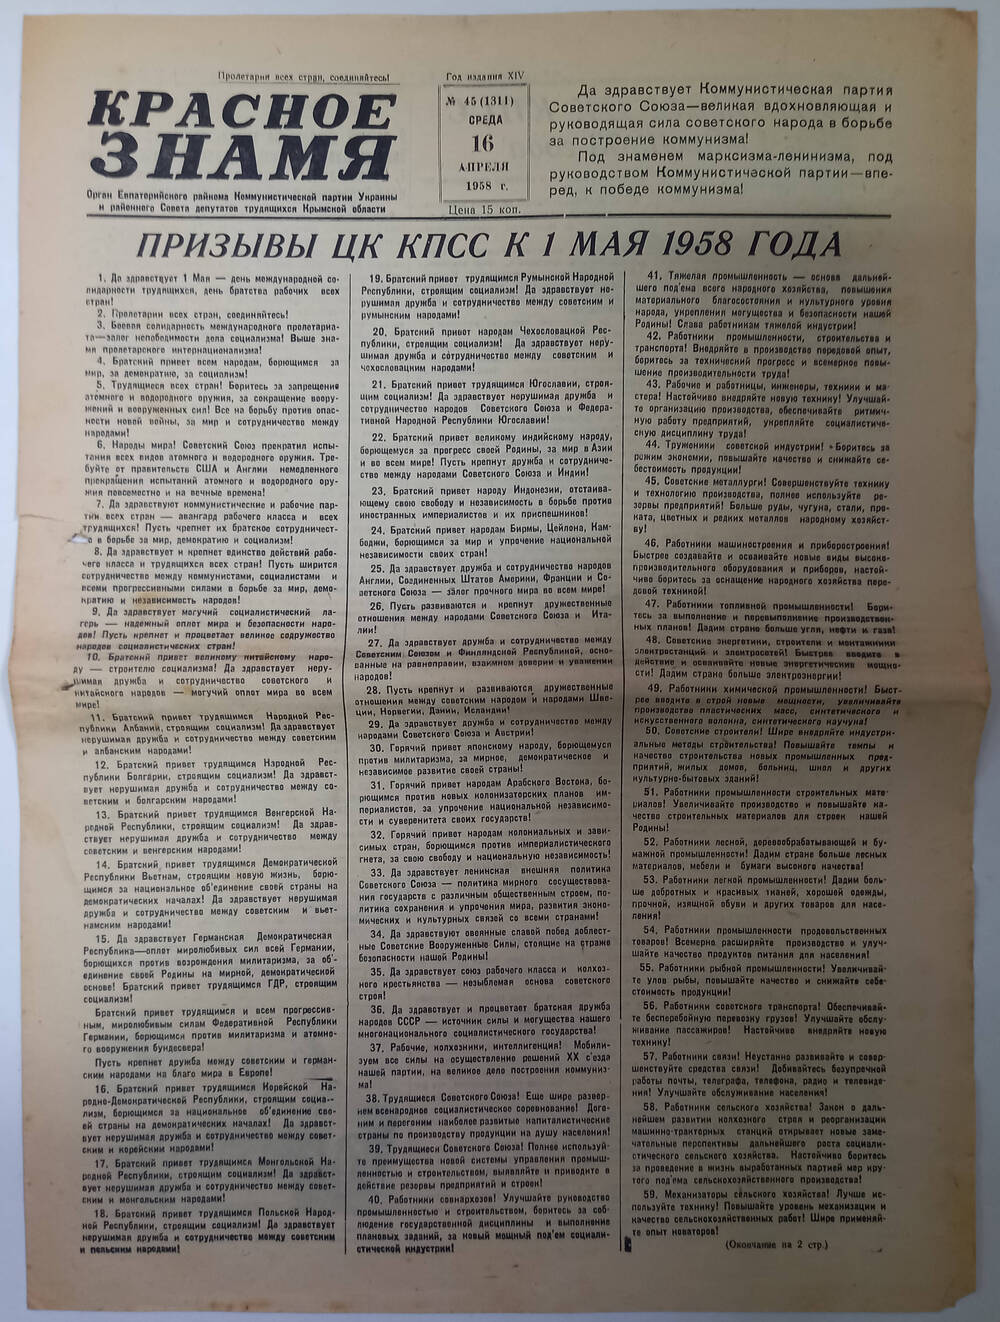 Газета Красное знамя №45(1311) от 16.04.1958 г.